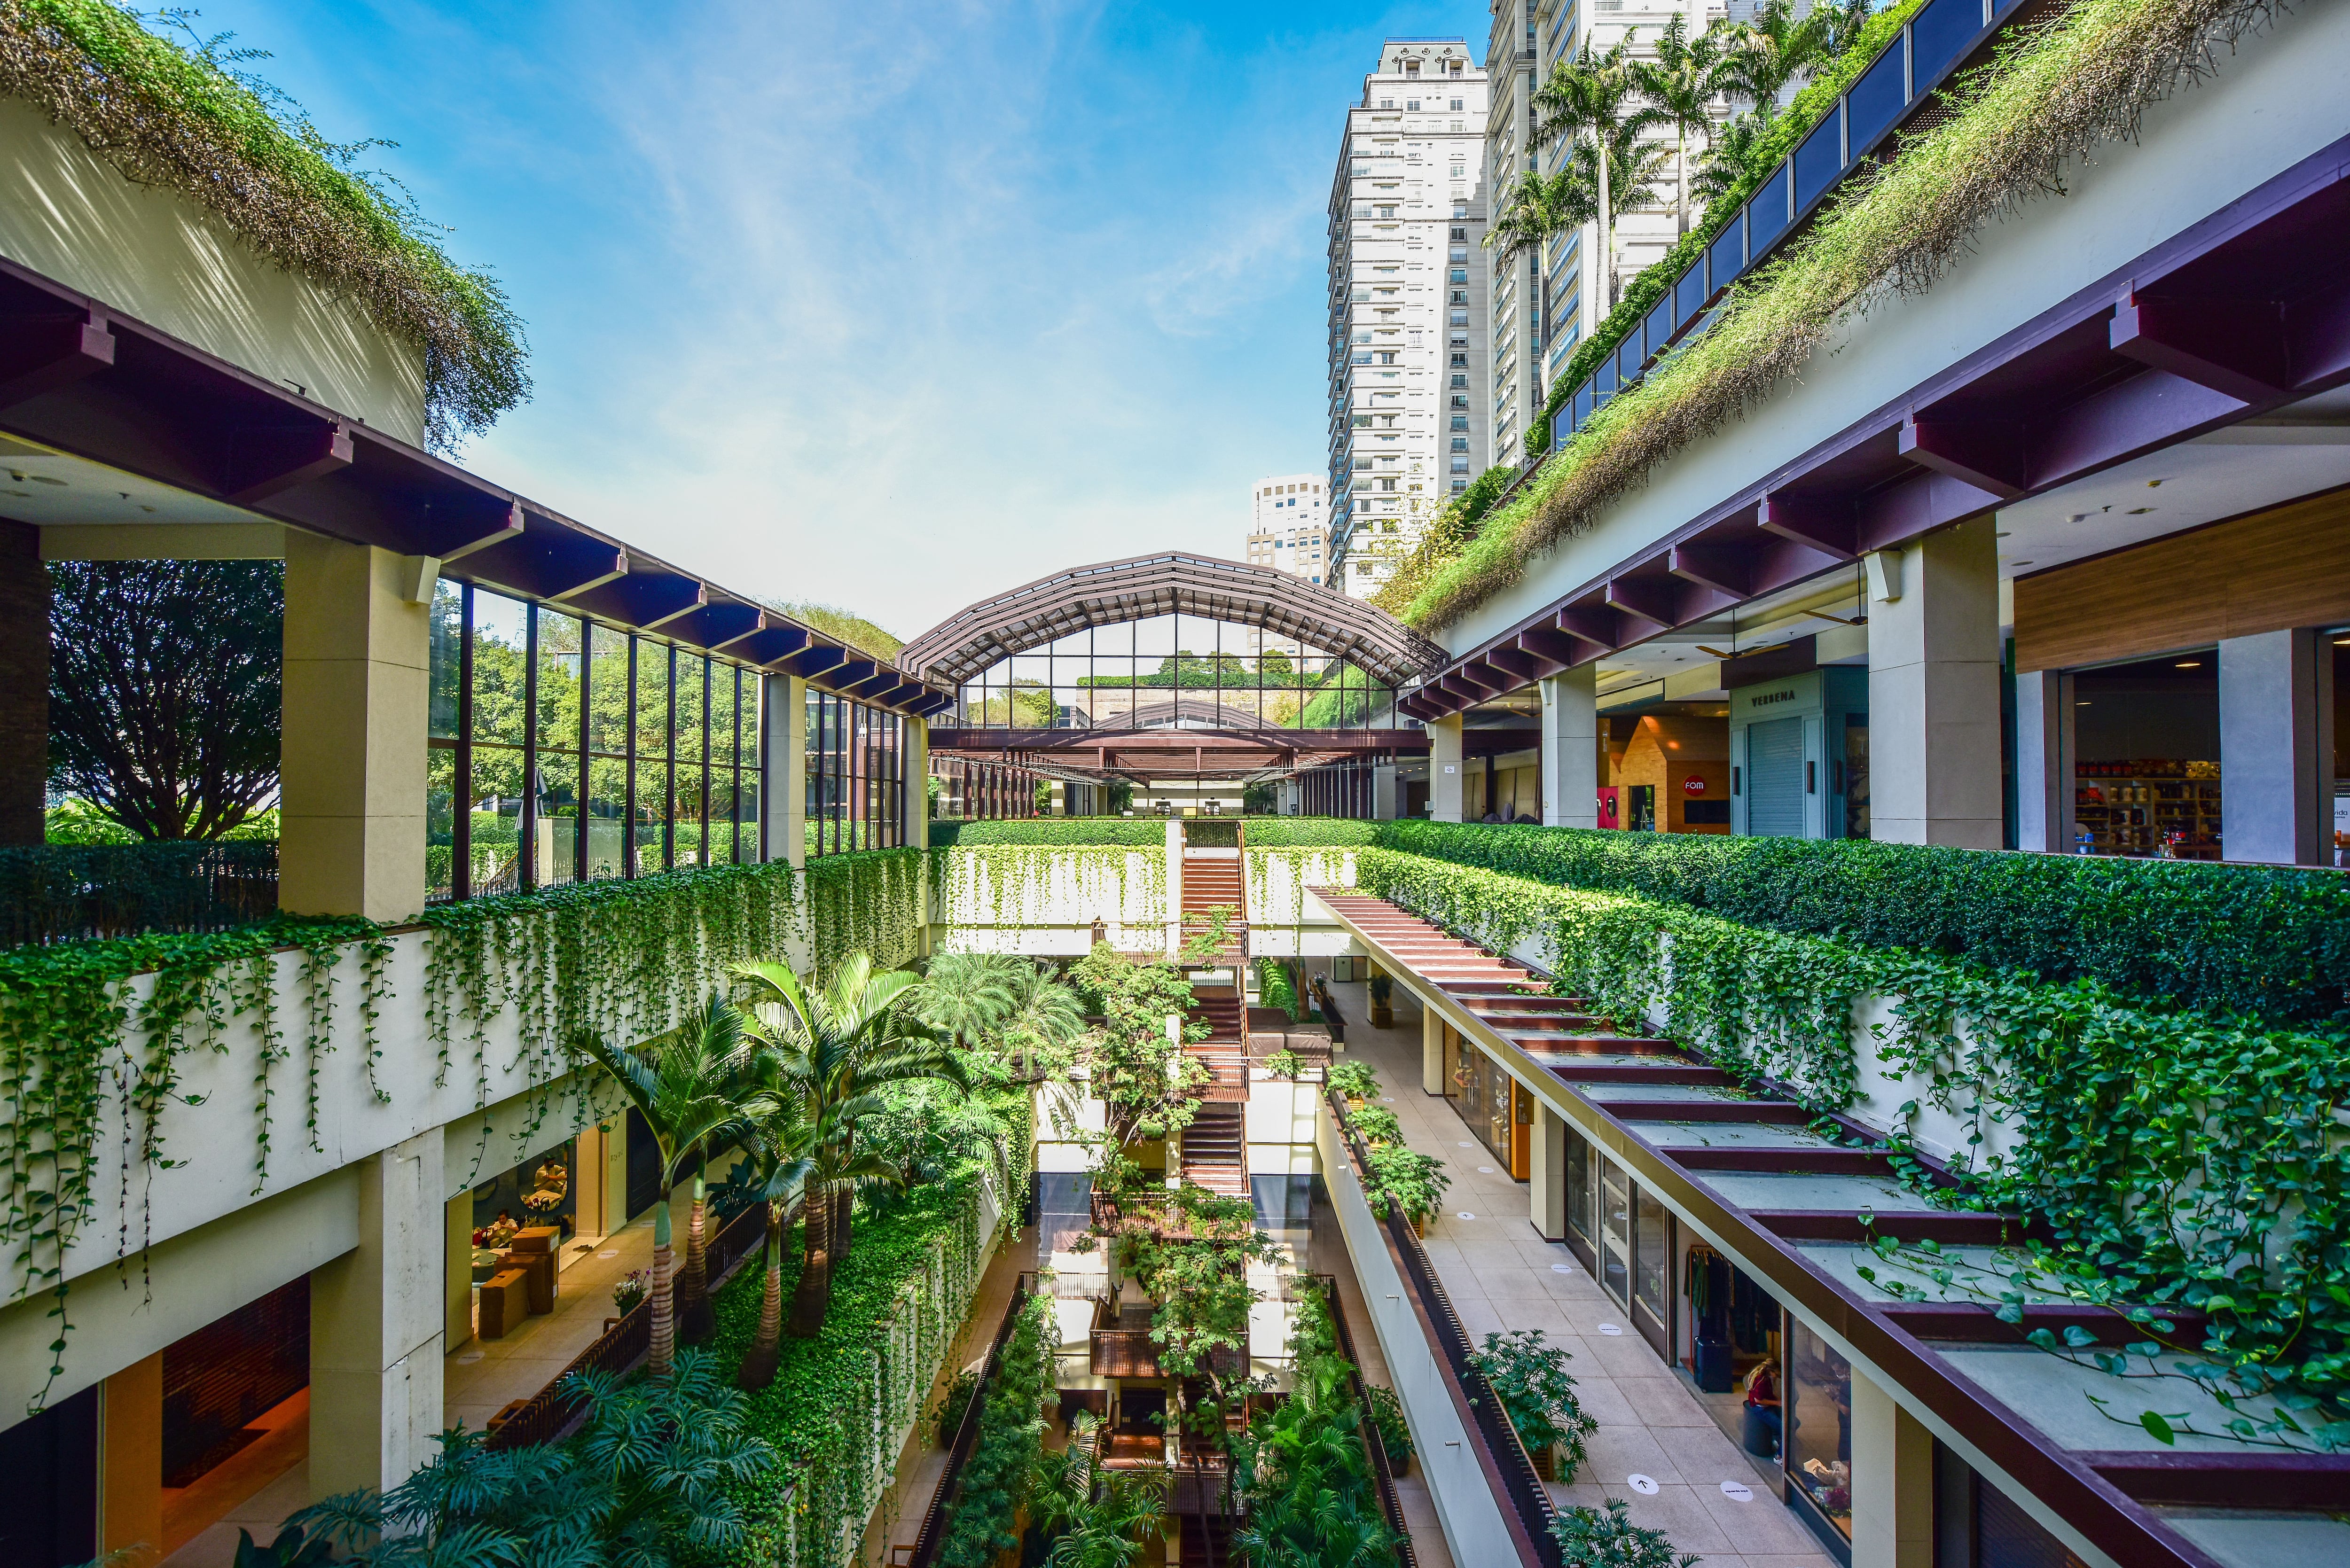 Complexo Cidade Jardim – morar, consumir e trabalhar - High